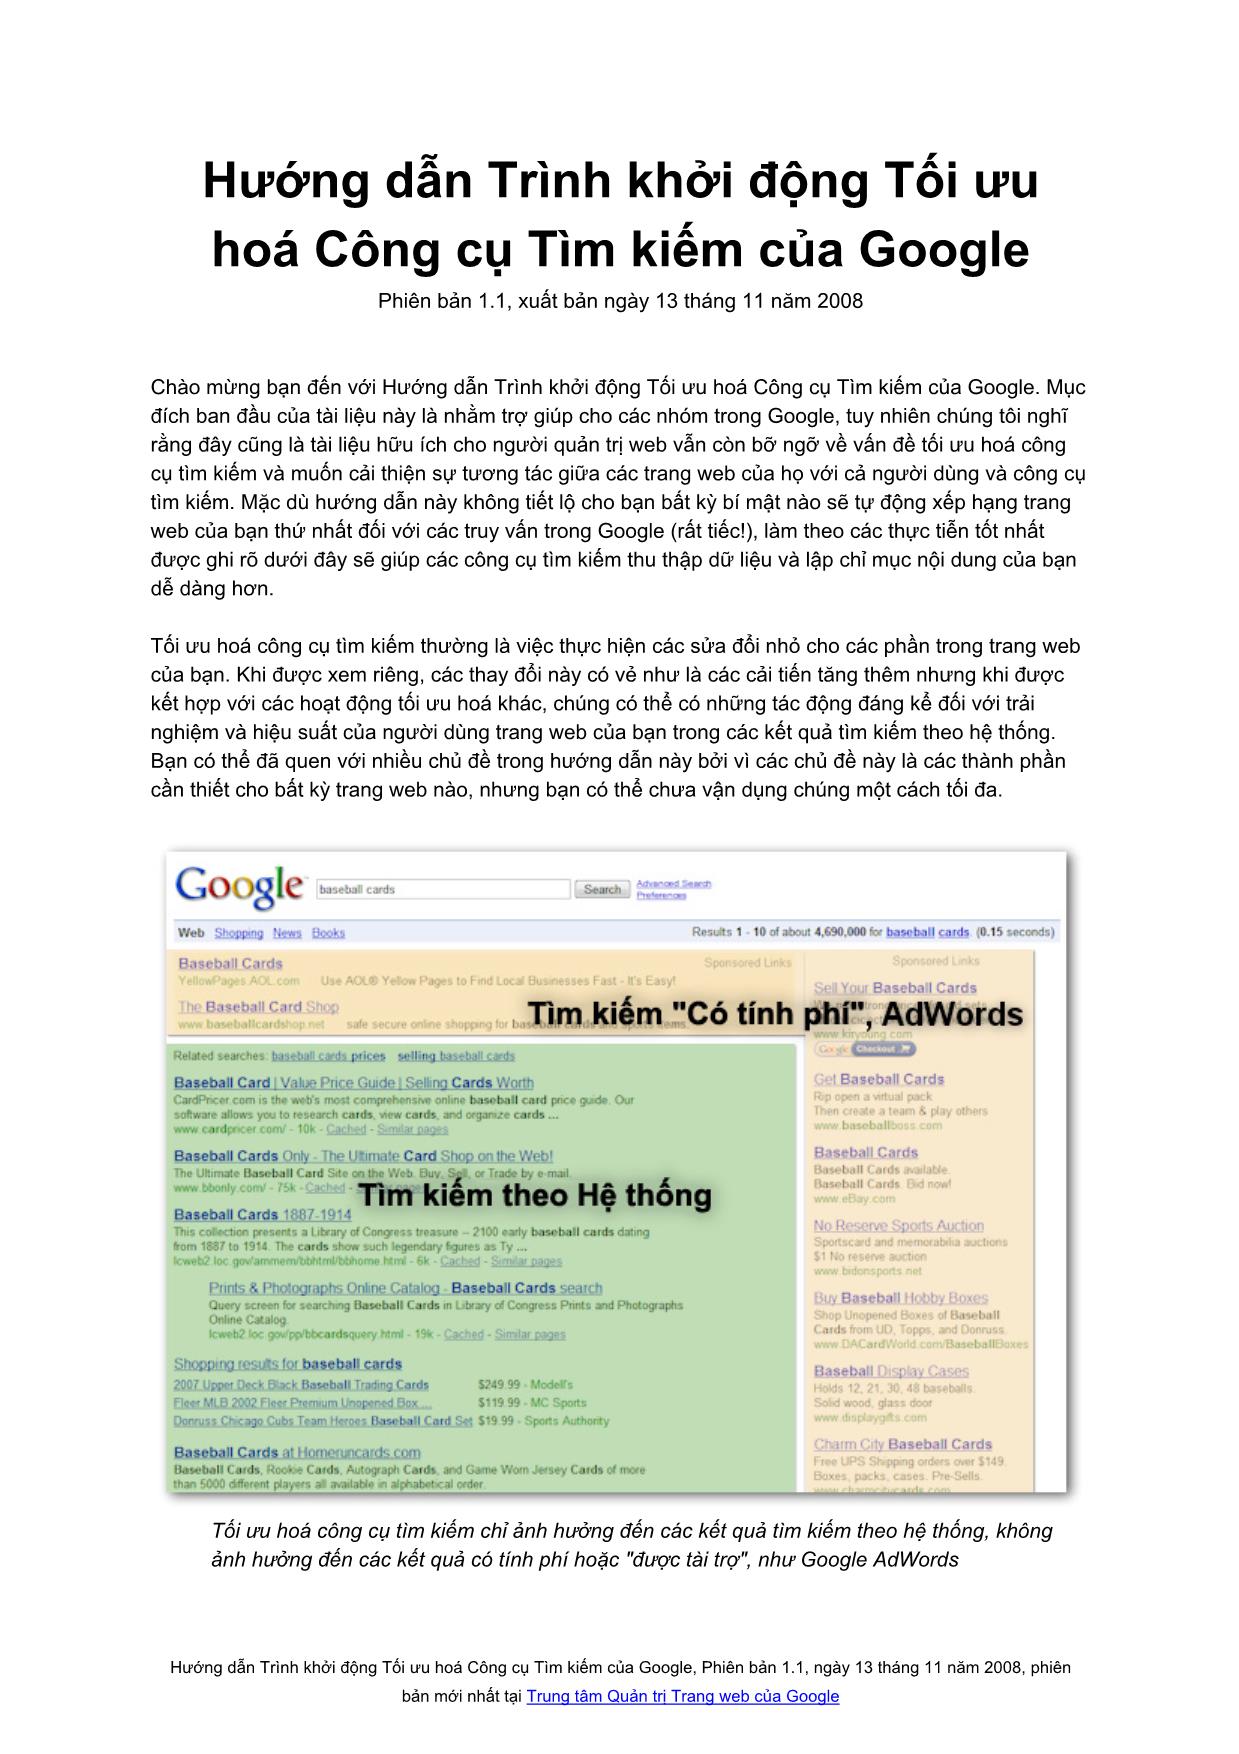 Hướng dẫn trình khởi động tối ưu hoá công cụ tìm kiếm của google trang 1